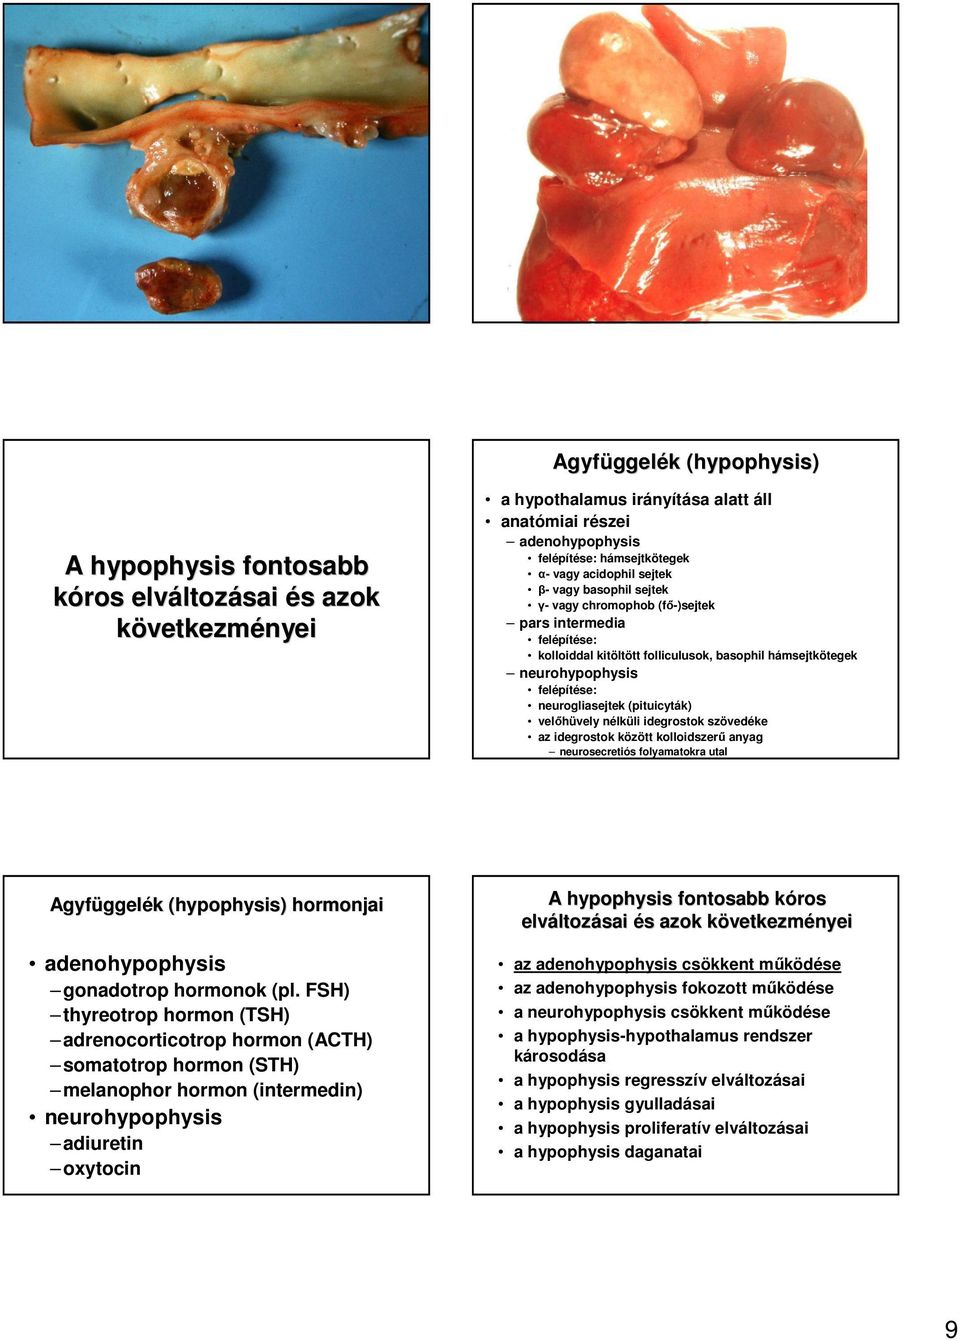 velıhüvely nélküli idegrostok szövedéke az idegrostok között kolloidszerő anyag neurosecretiós folyamatokra utal Agyfüggel ggelék k (hypophysis( hypophysis) ) hormonjai adenohypophysis gonadotrop